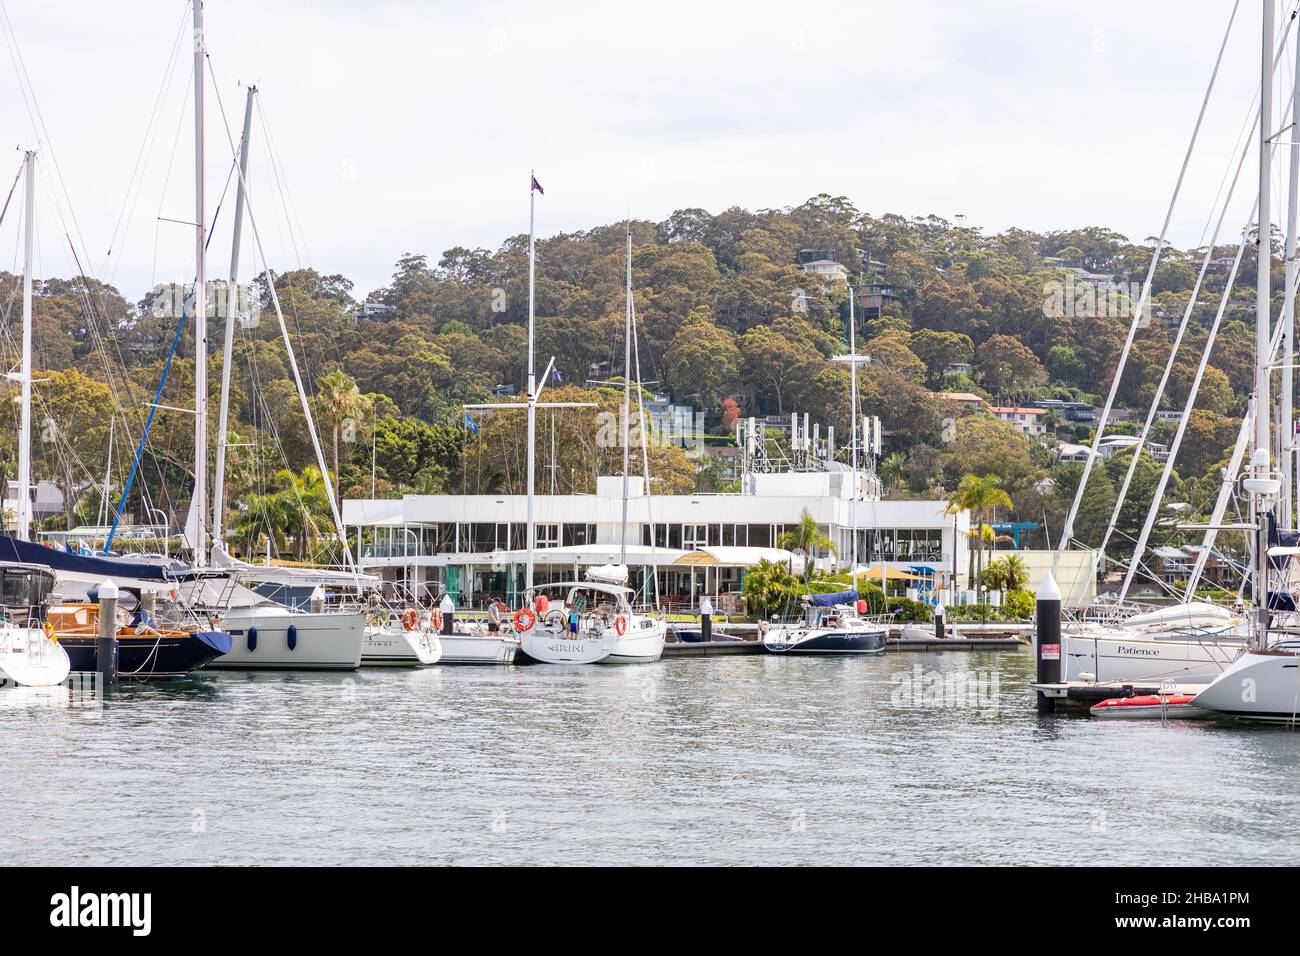 Royal Prince Alfred Yacht Club vu de l'eau sur Pittwater, avec des bateaux et des yachts dans la marina, Sydney, Australie Banque D'Images